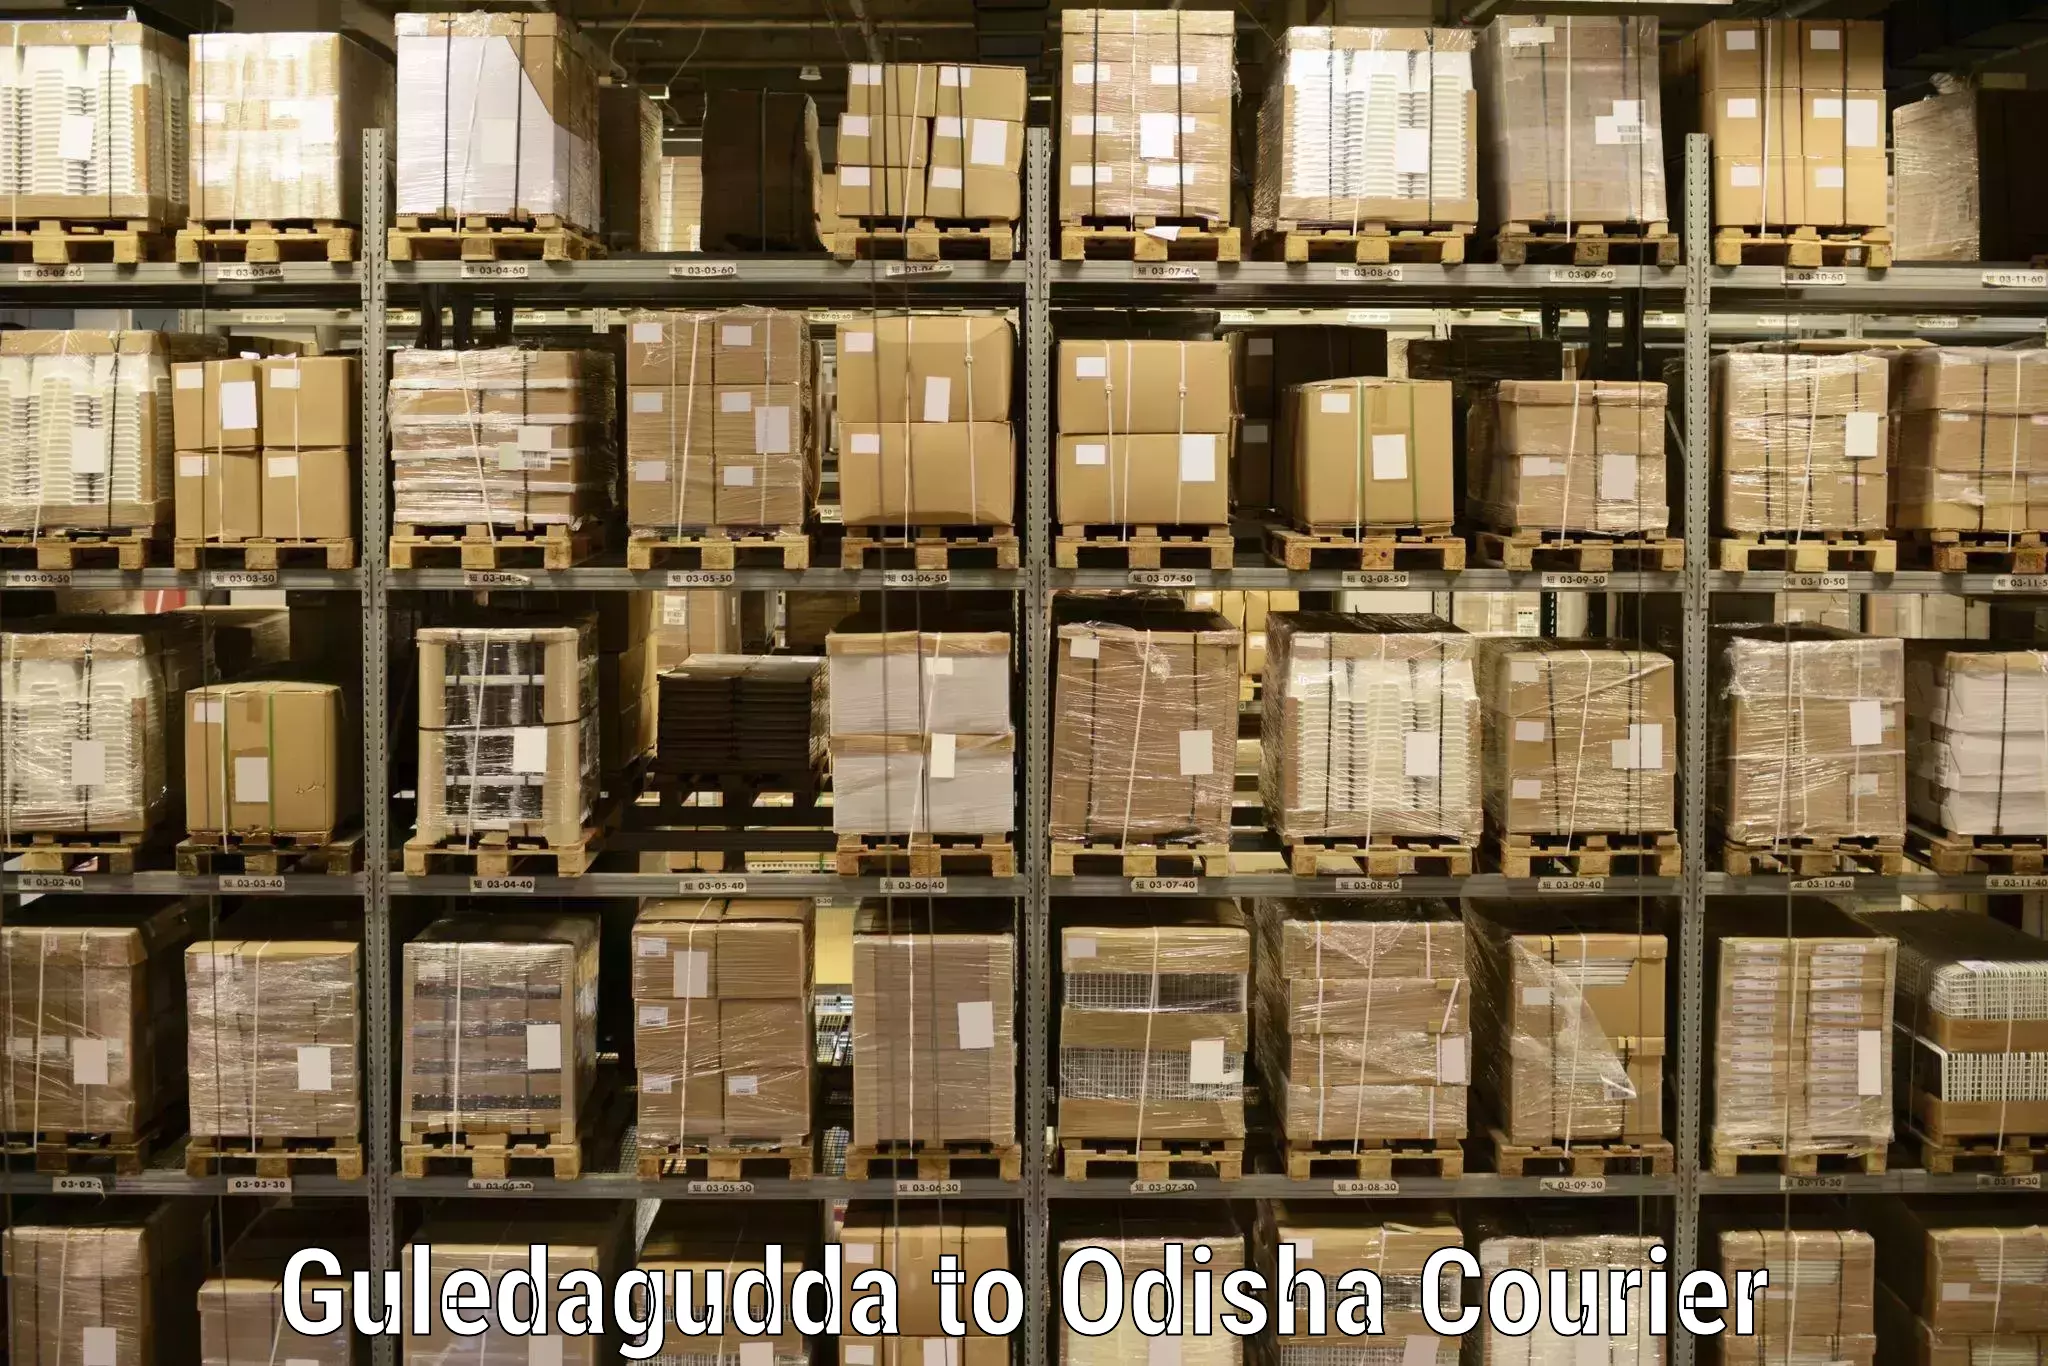 Professional courier services Guledagudda to Sambalpur